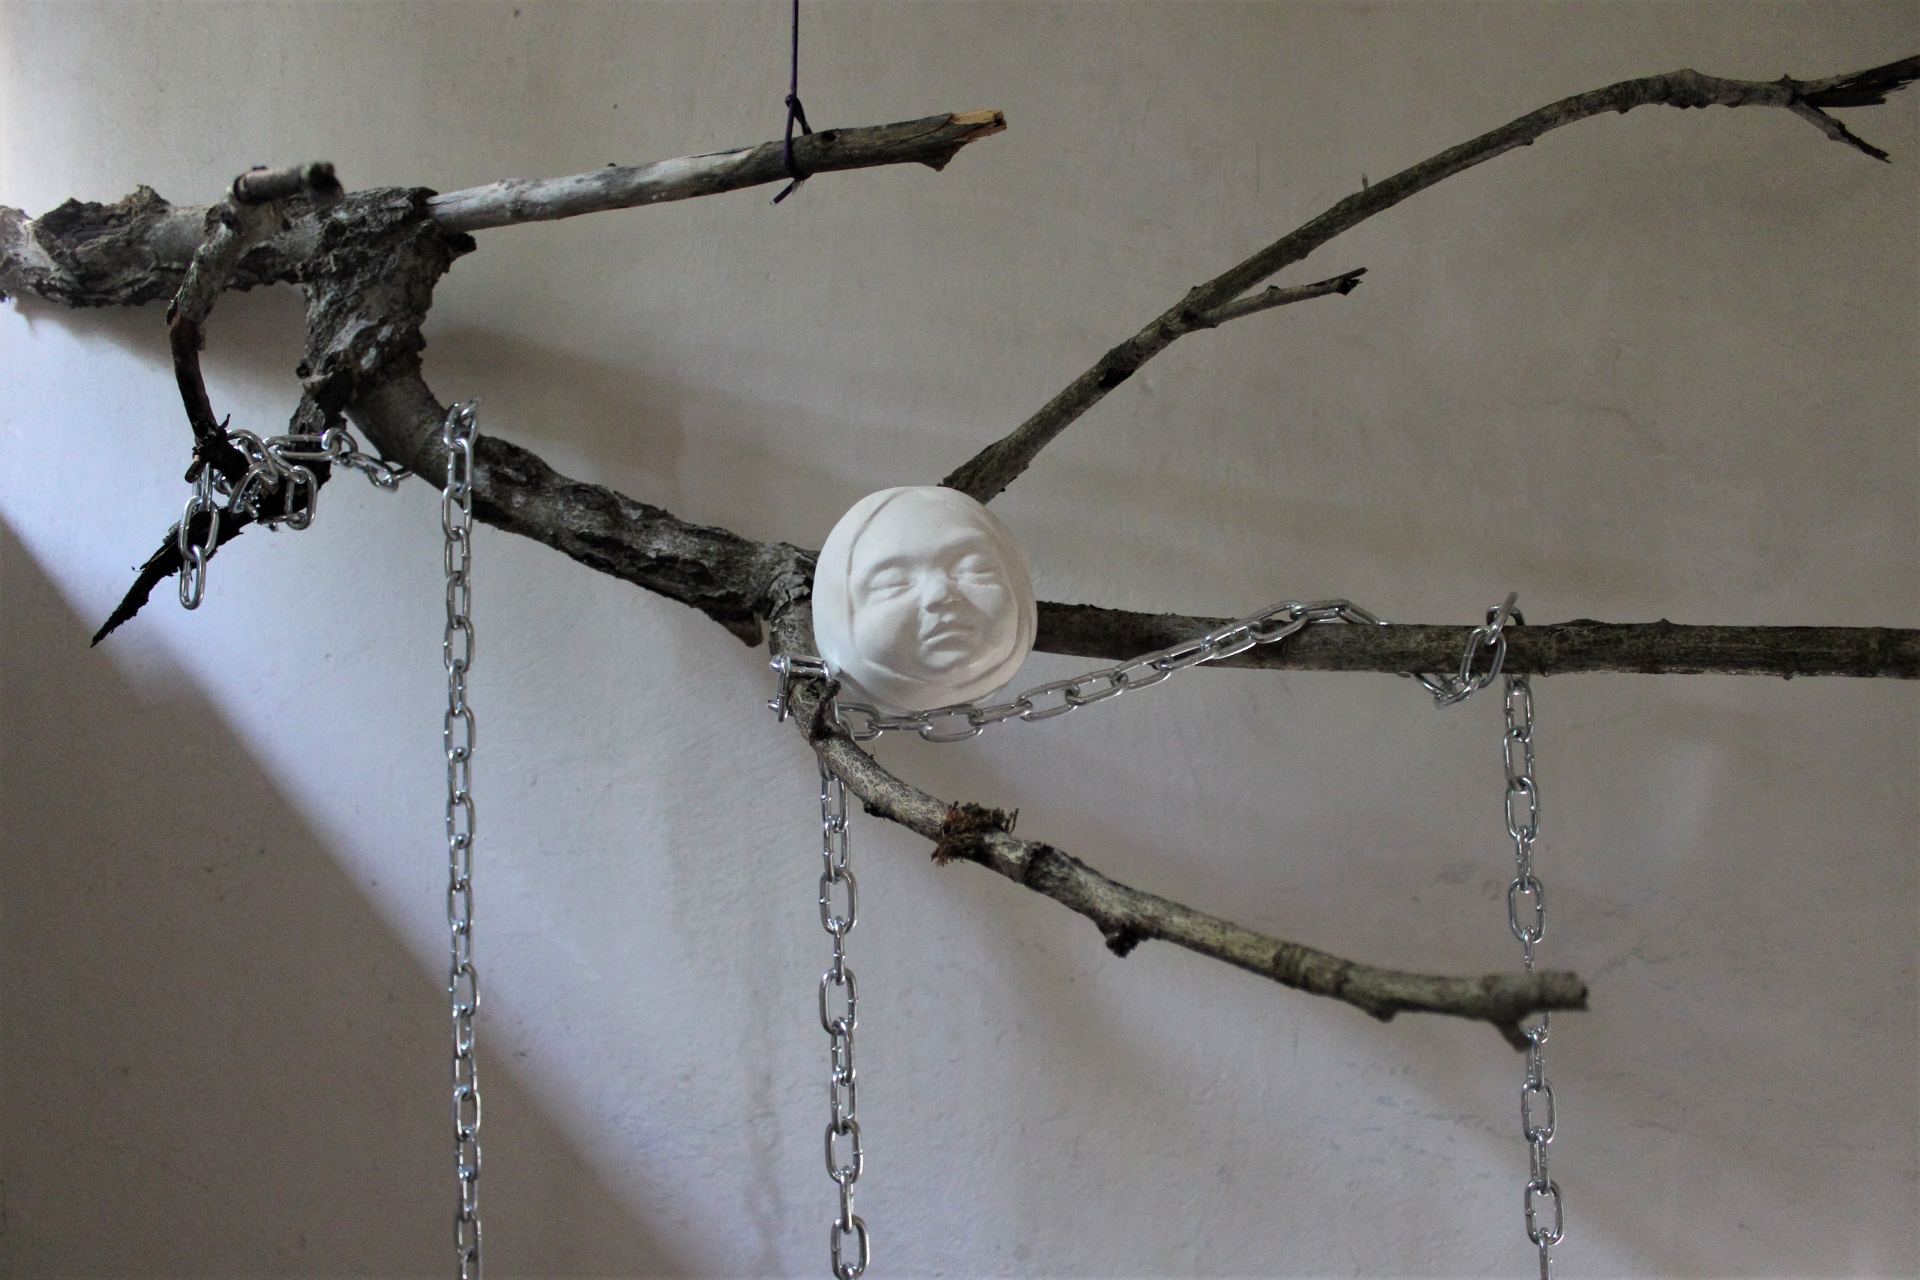 Instalacja składająca się z gałęzi i łańcuchów na której zawieszone są białerzeźby dziecięcych głów, których forma może kojarzyć się z jabłkiem